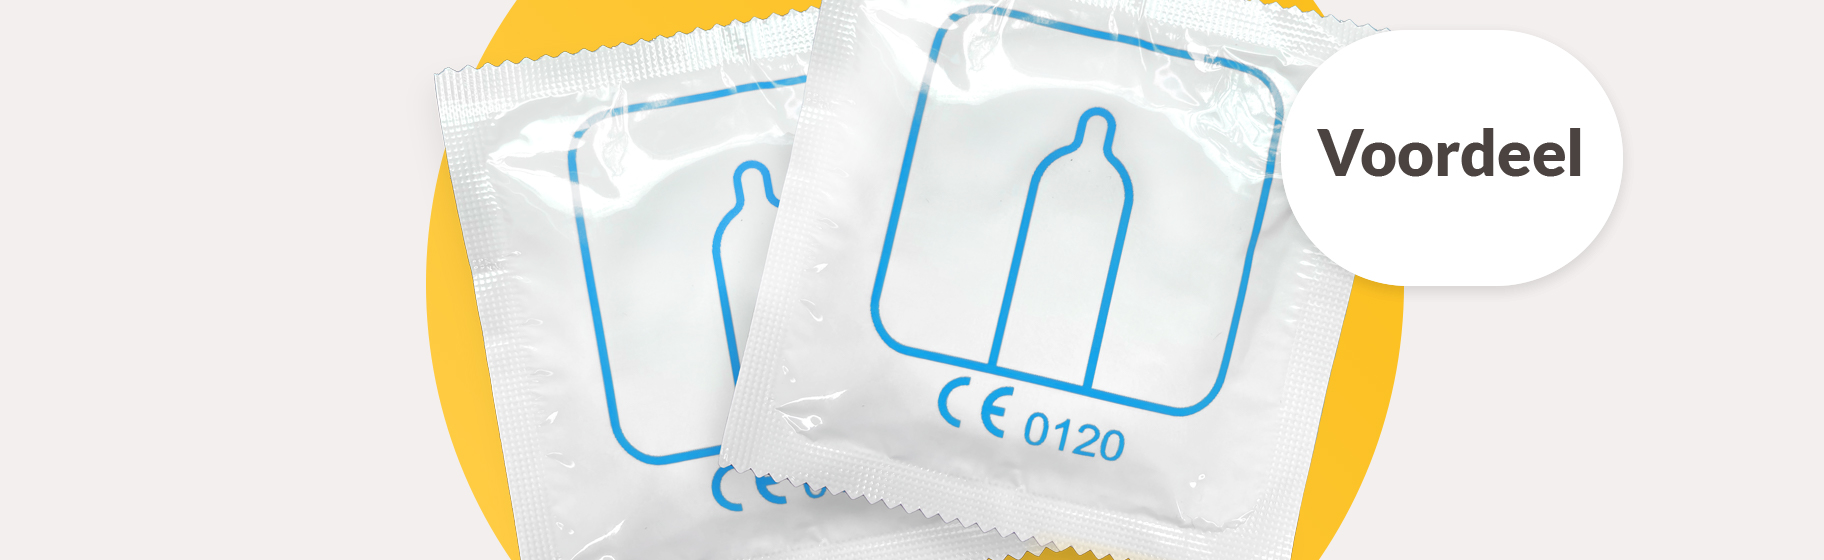 foto van twee condooms in verpakking